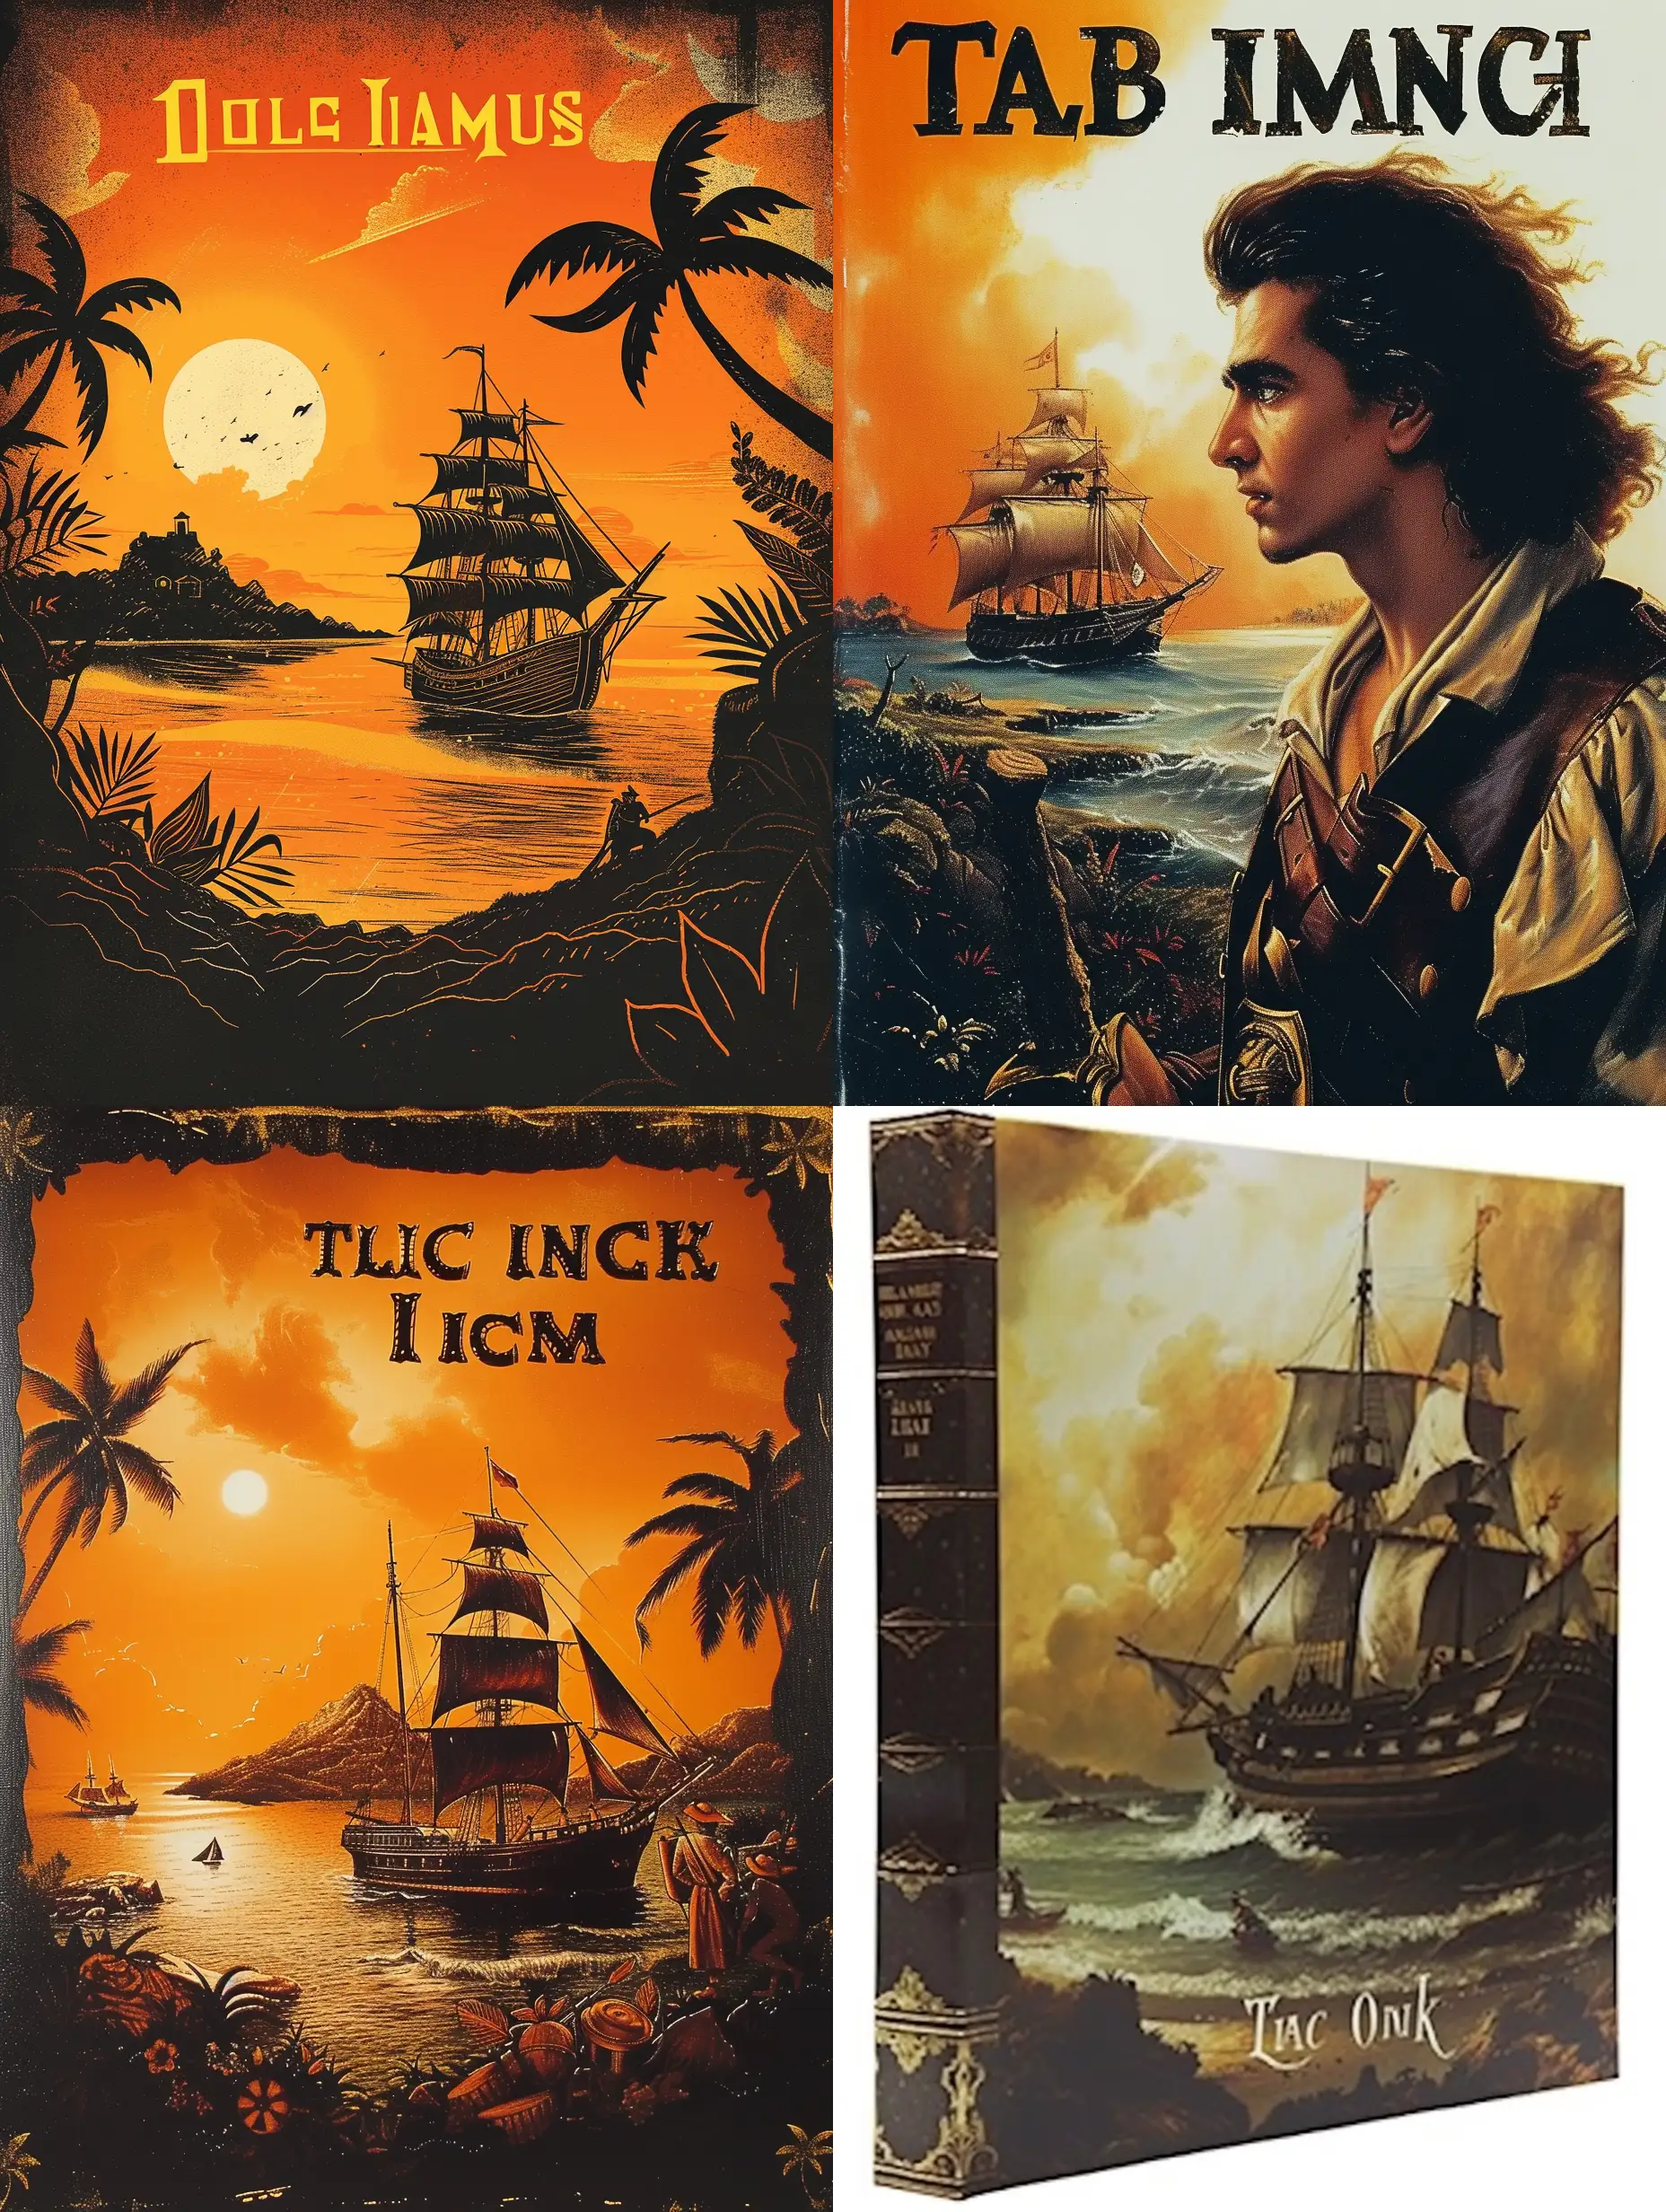 book cover for the book Treasure island